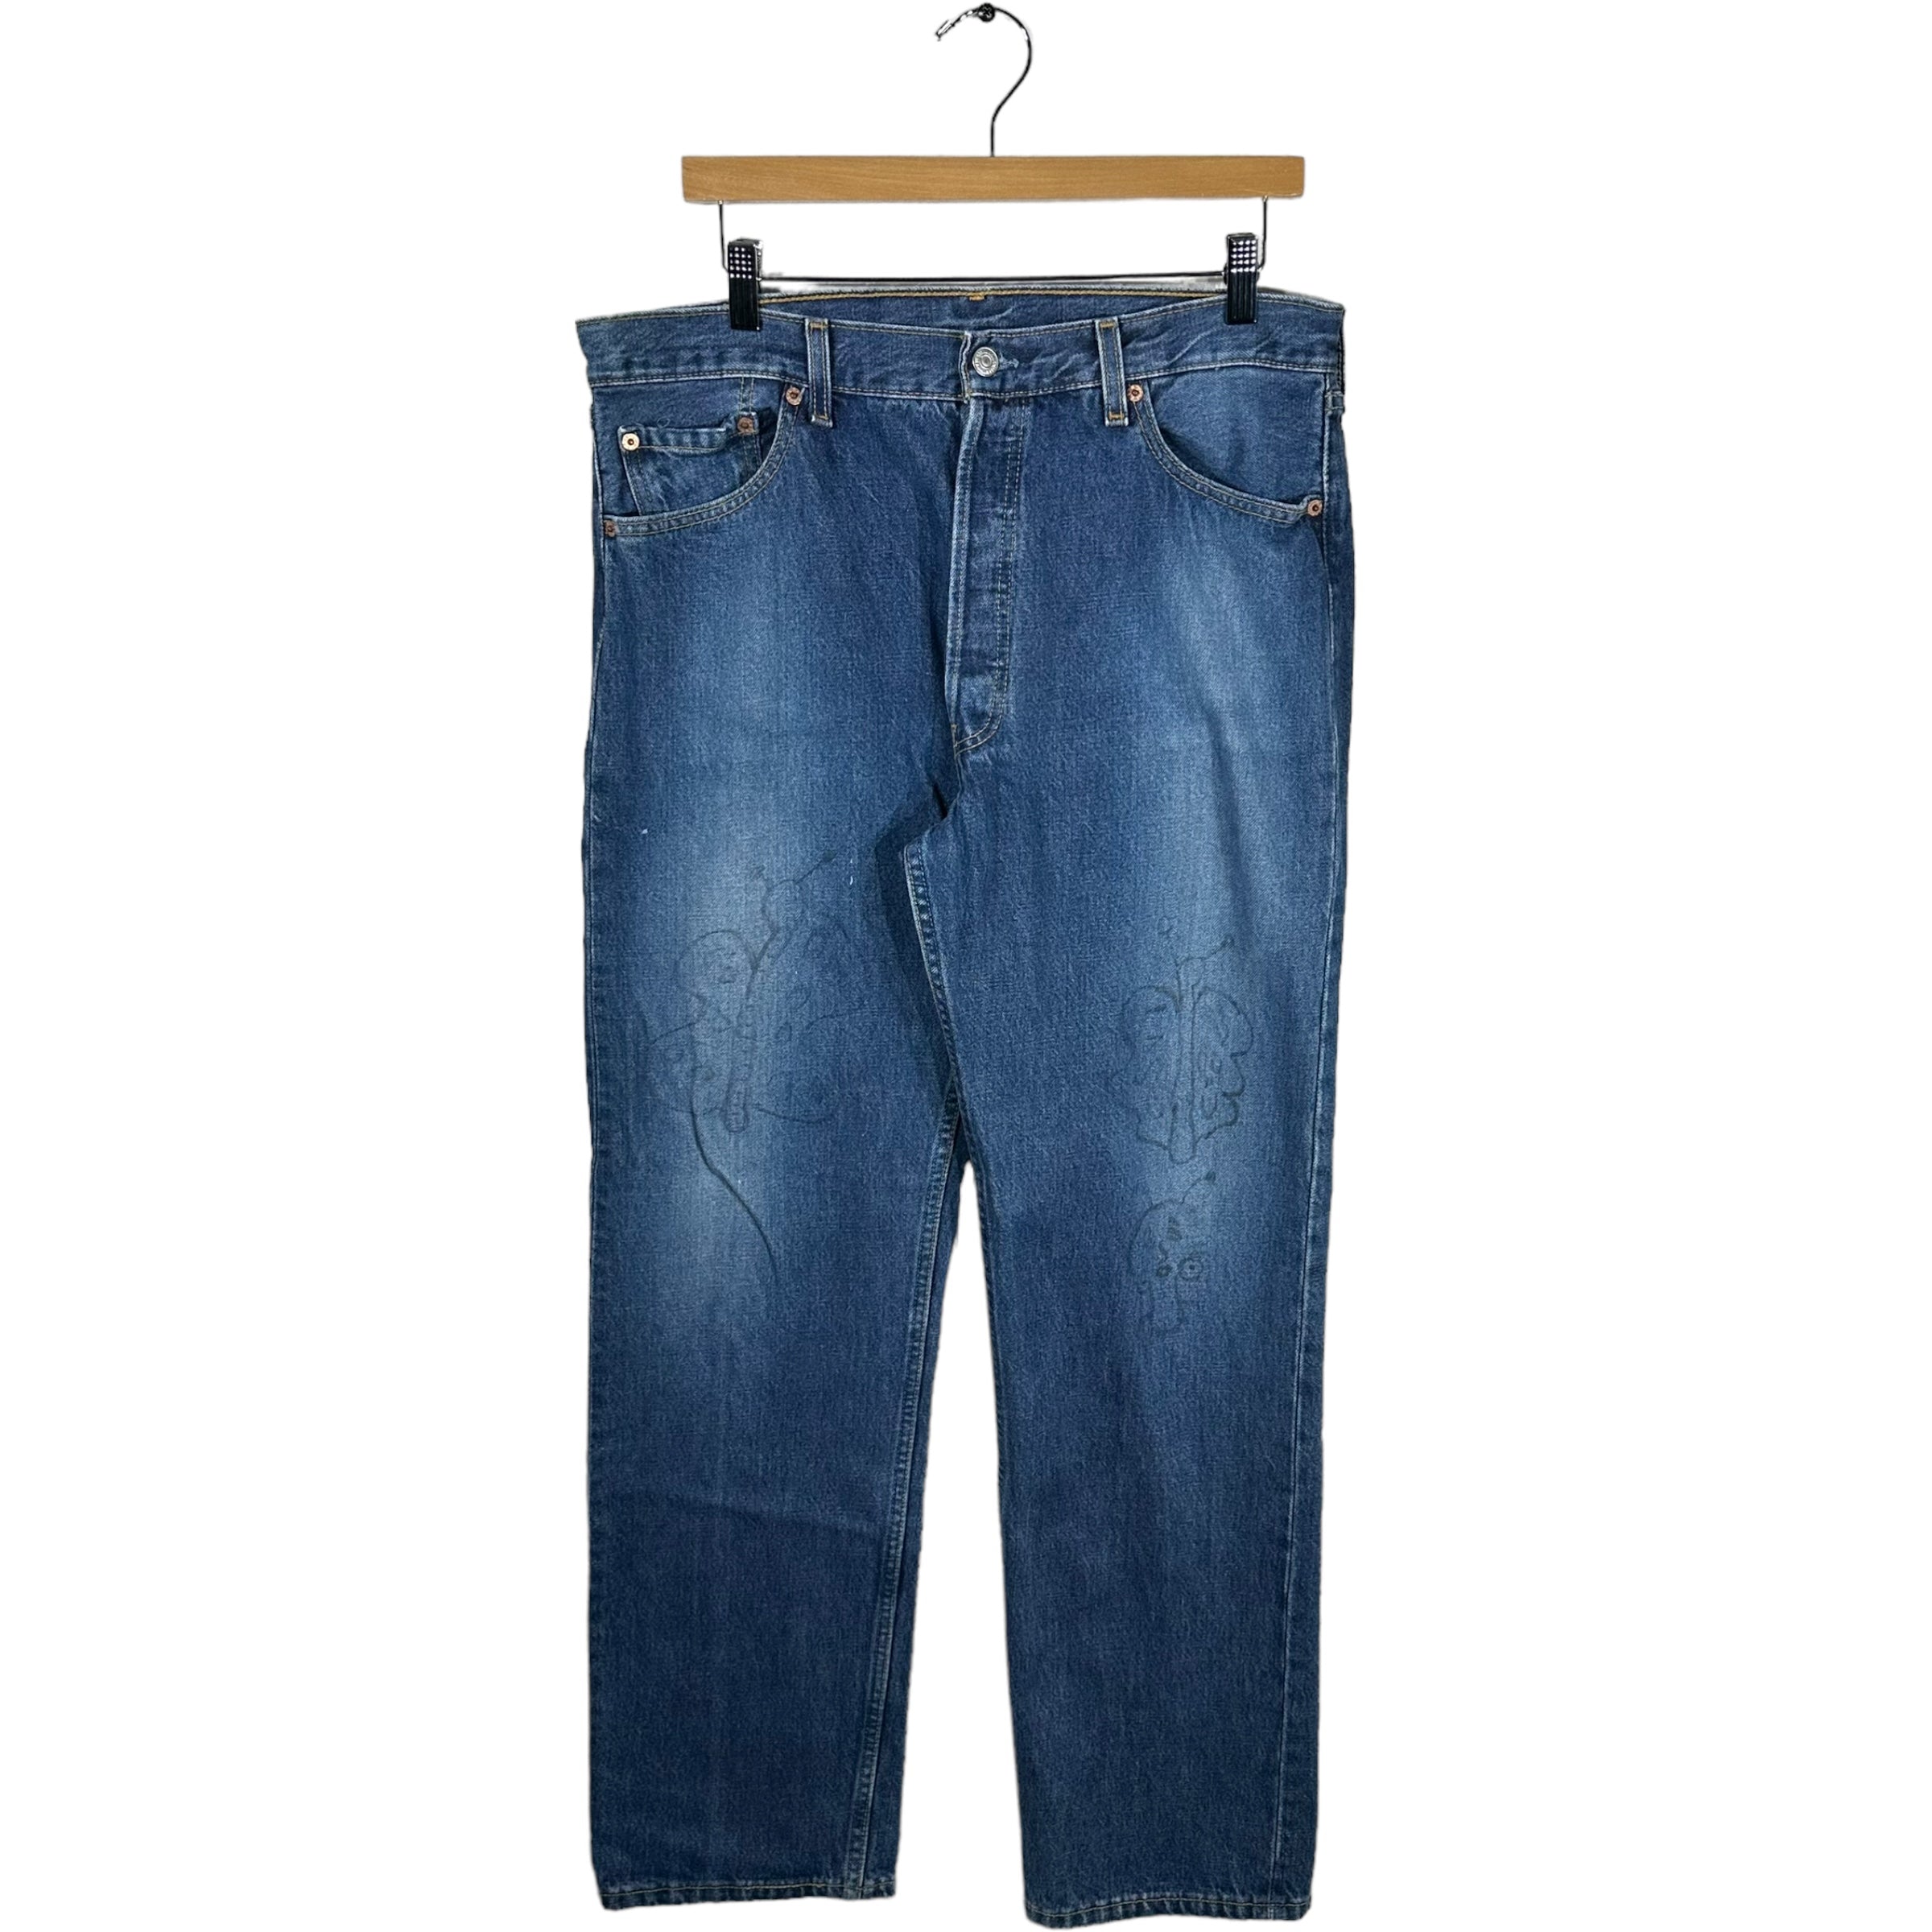 Vintage Levis 501 Denim Jeans